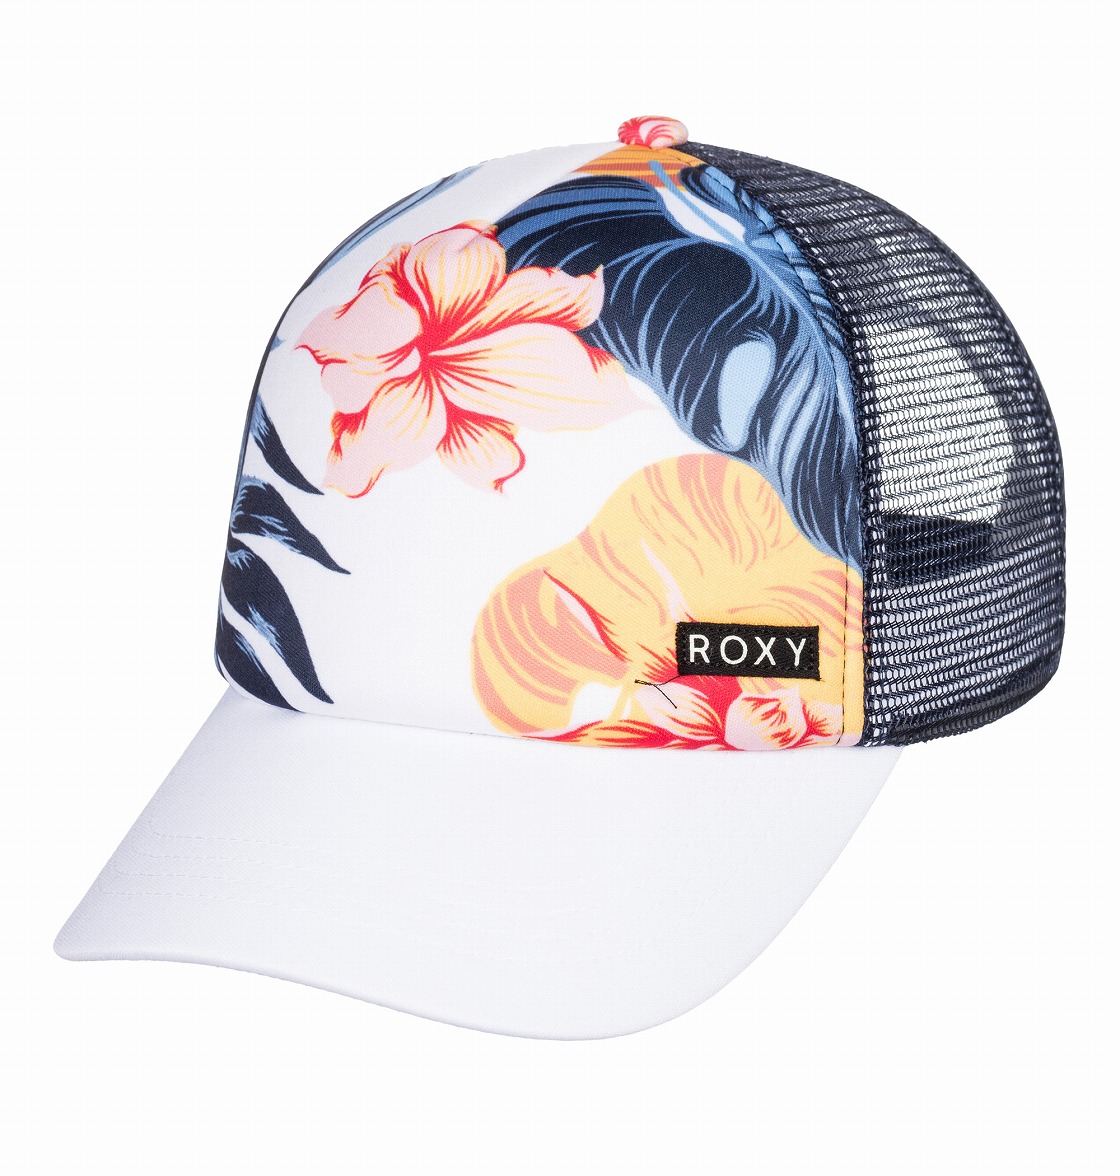 楽天市場 アウトレット価格 Roxy ロキシー キャップ Honey Coconut キャップ 帽子 Quiksilver Online Store